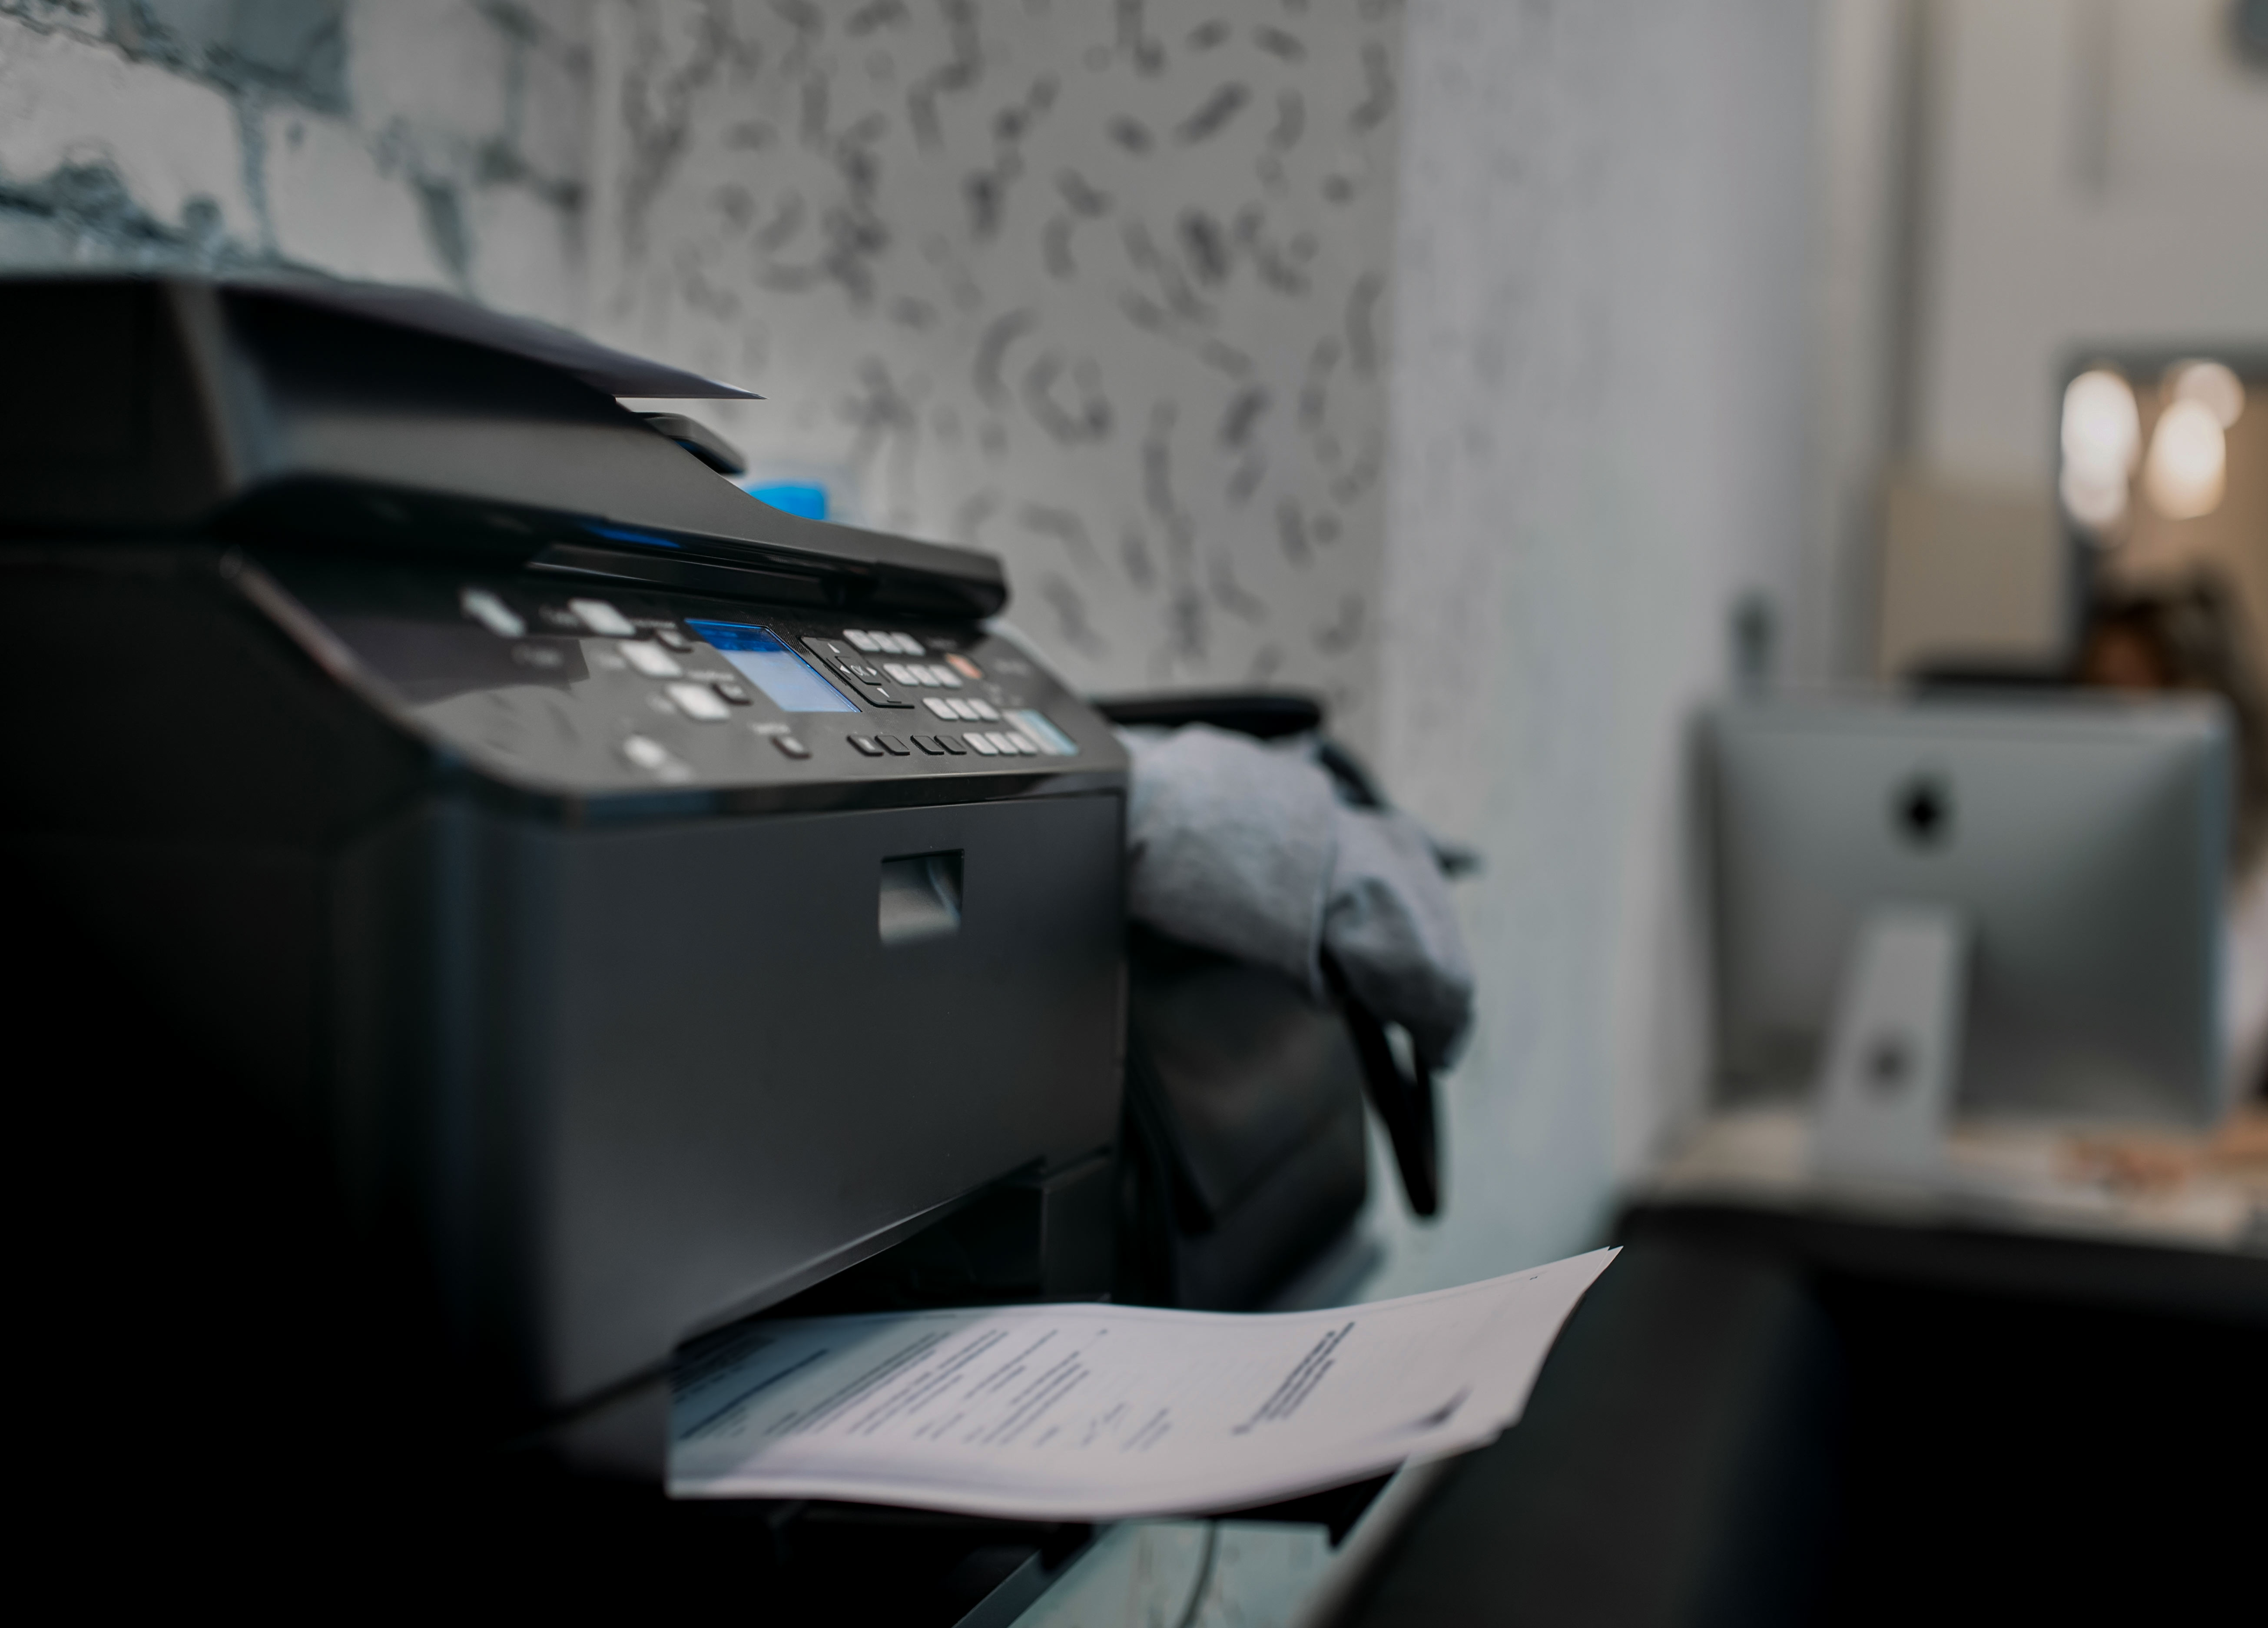 printer in office